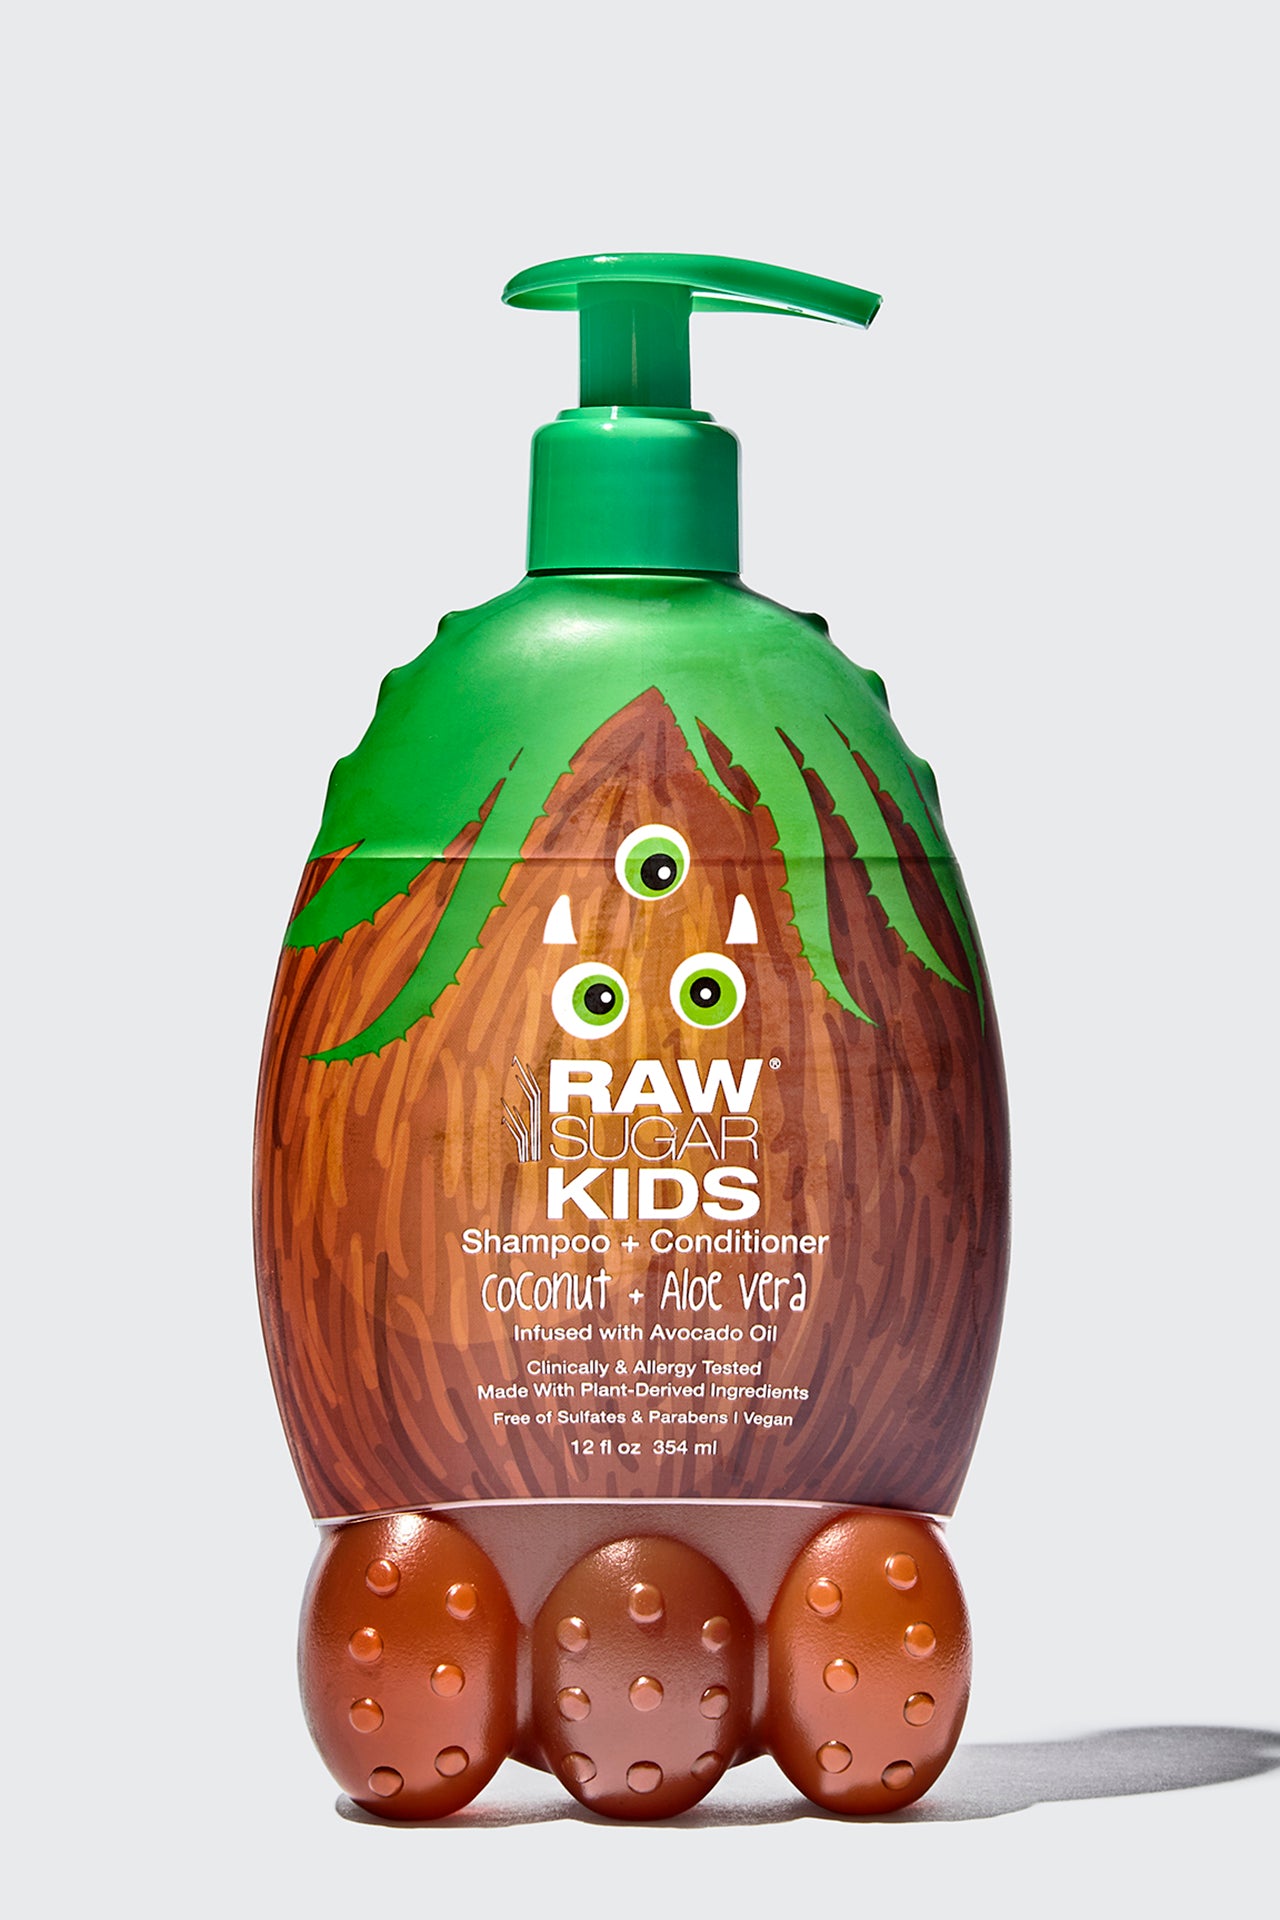 Kids' 2-in-1 Shampoo + Conditioner, Coconut + Aloe Vera